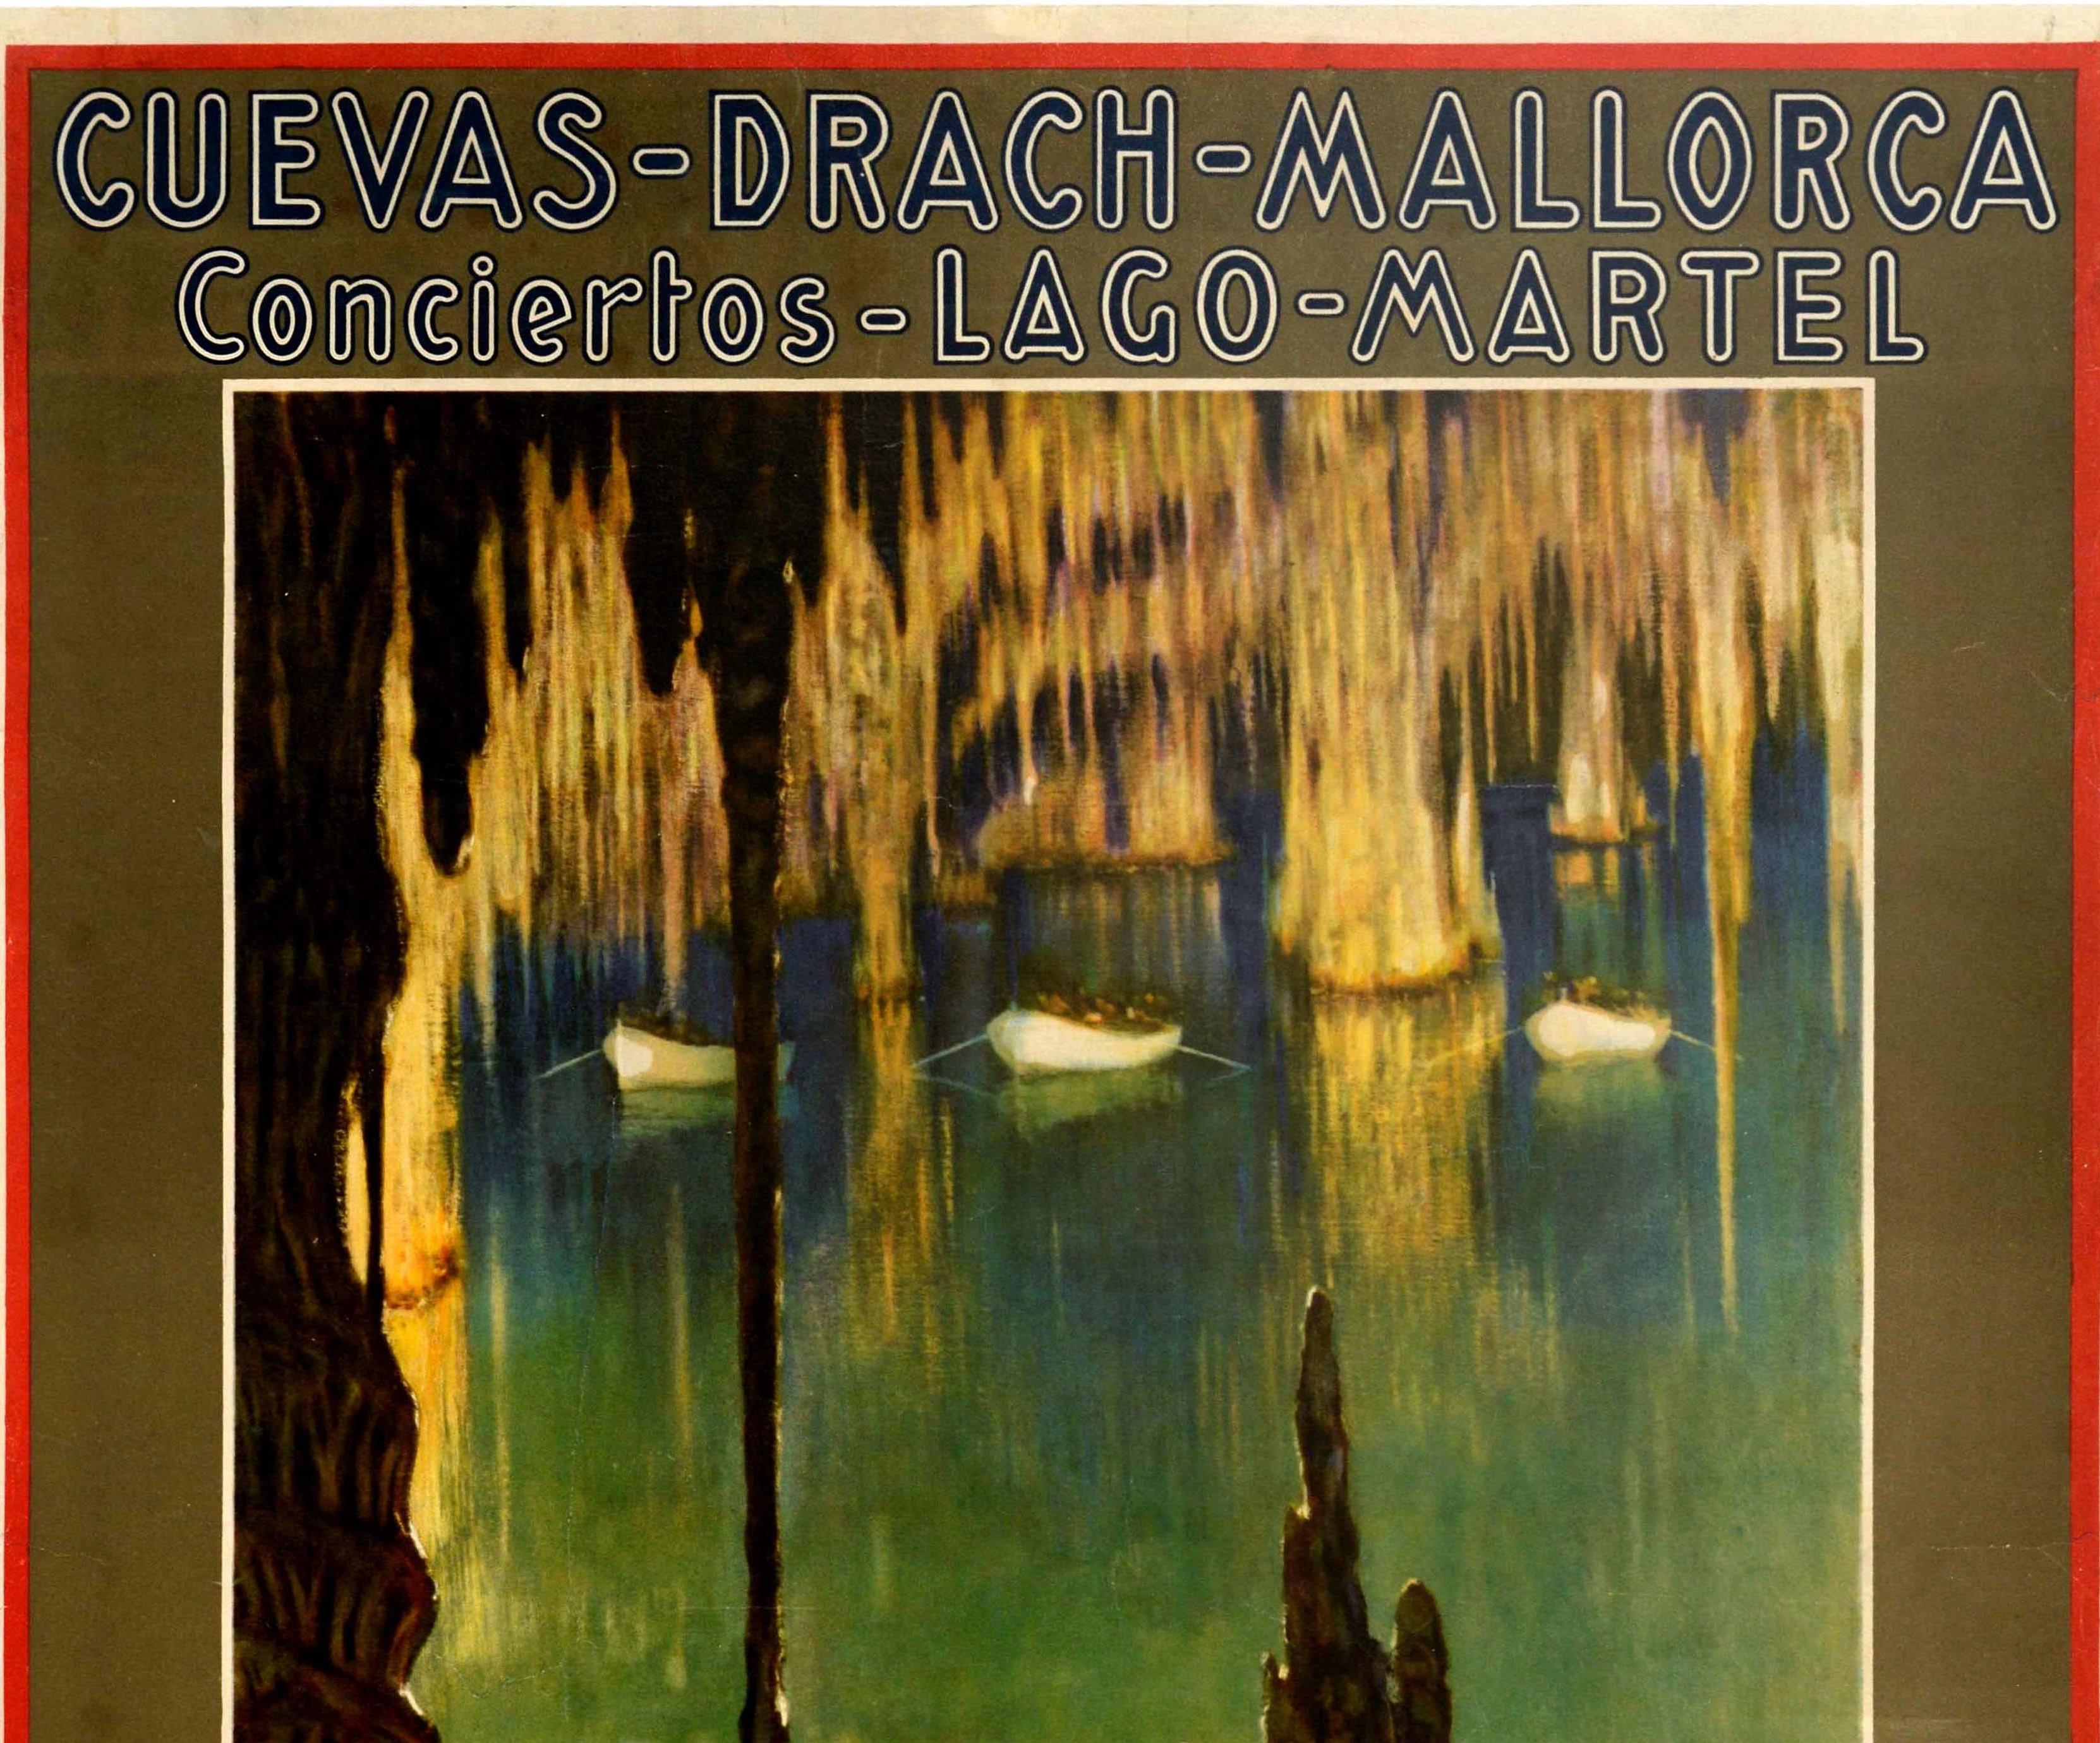 Affiche de voyage originale pour les grottes de Drach Mallorca Lake Martel Concerts / Cuevas Drach Mallorca Conciertos Lago Martel émise par l'office du tourisme Fomento Turismo de Palma. L'affiche présente une superbe œuvre du peintre autrichien